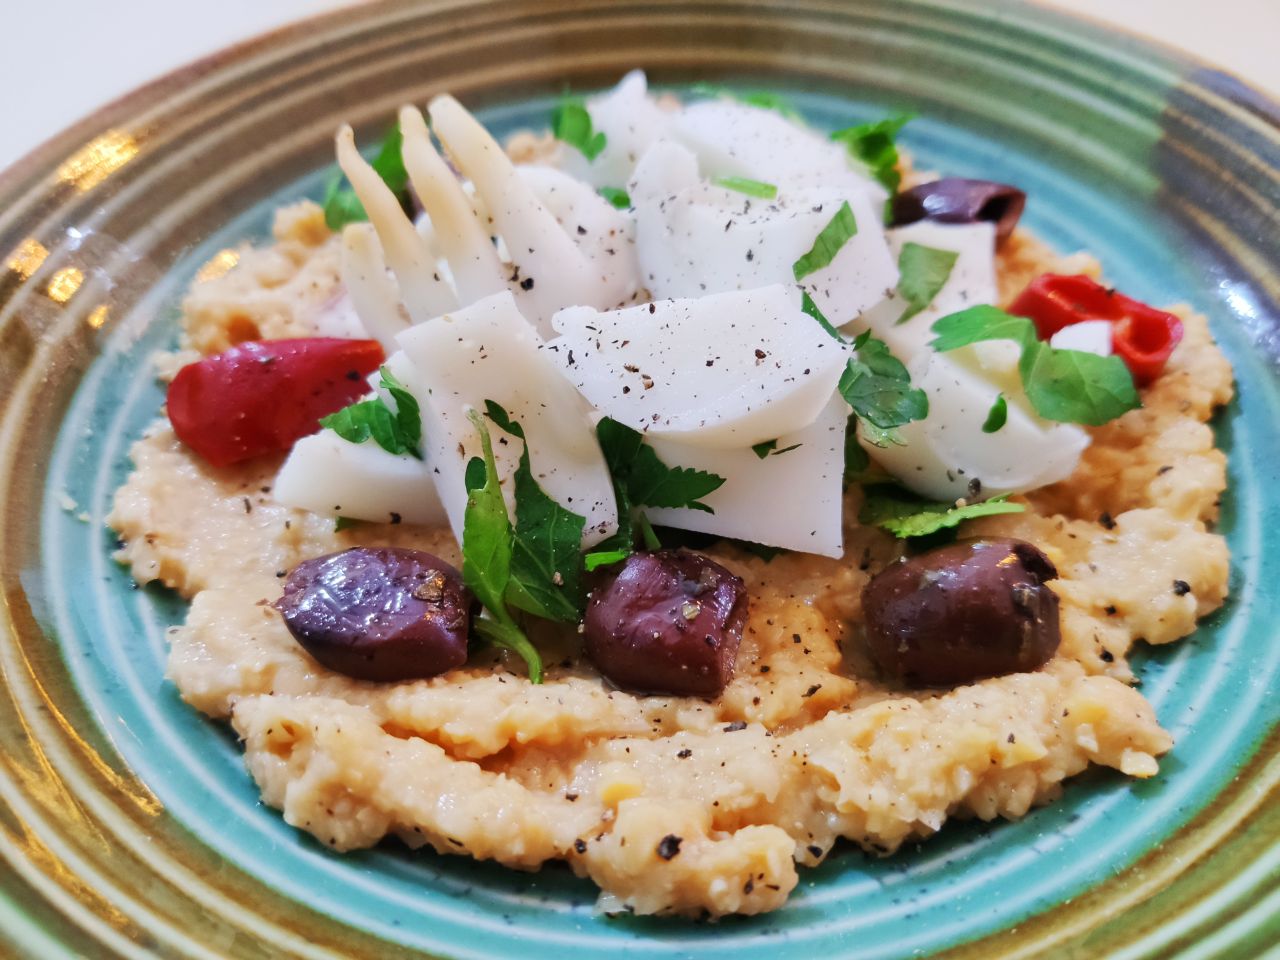 Secondi piatti a base di pesce semplici e veloci: insalata di seppia con crema di ceci e olive nere piccanti